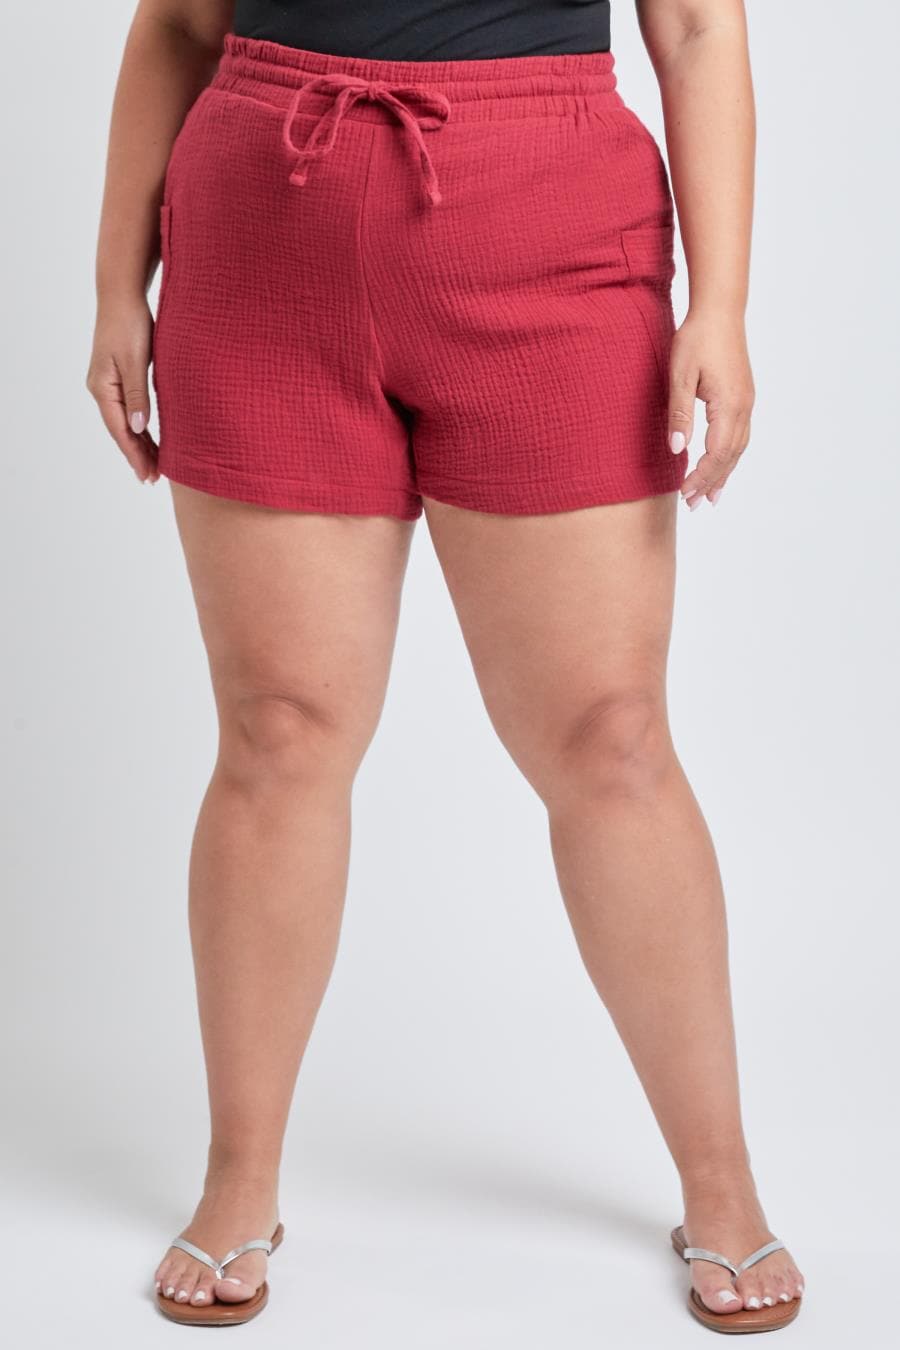 Junior Plus Size Cotton Shorts With Side Patch Pocket Es2651Dg